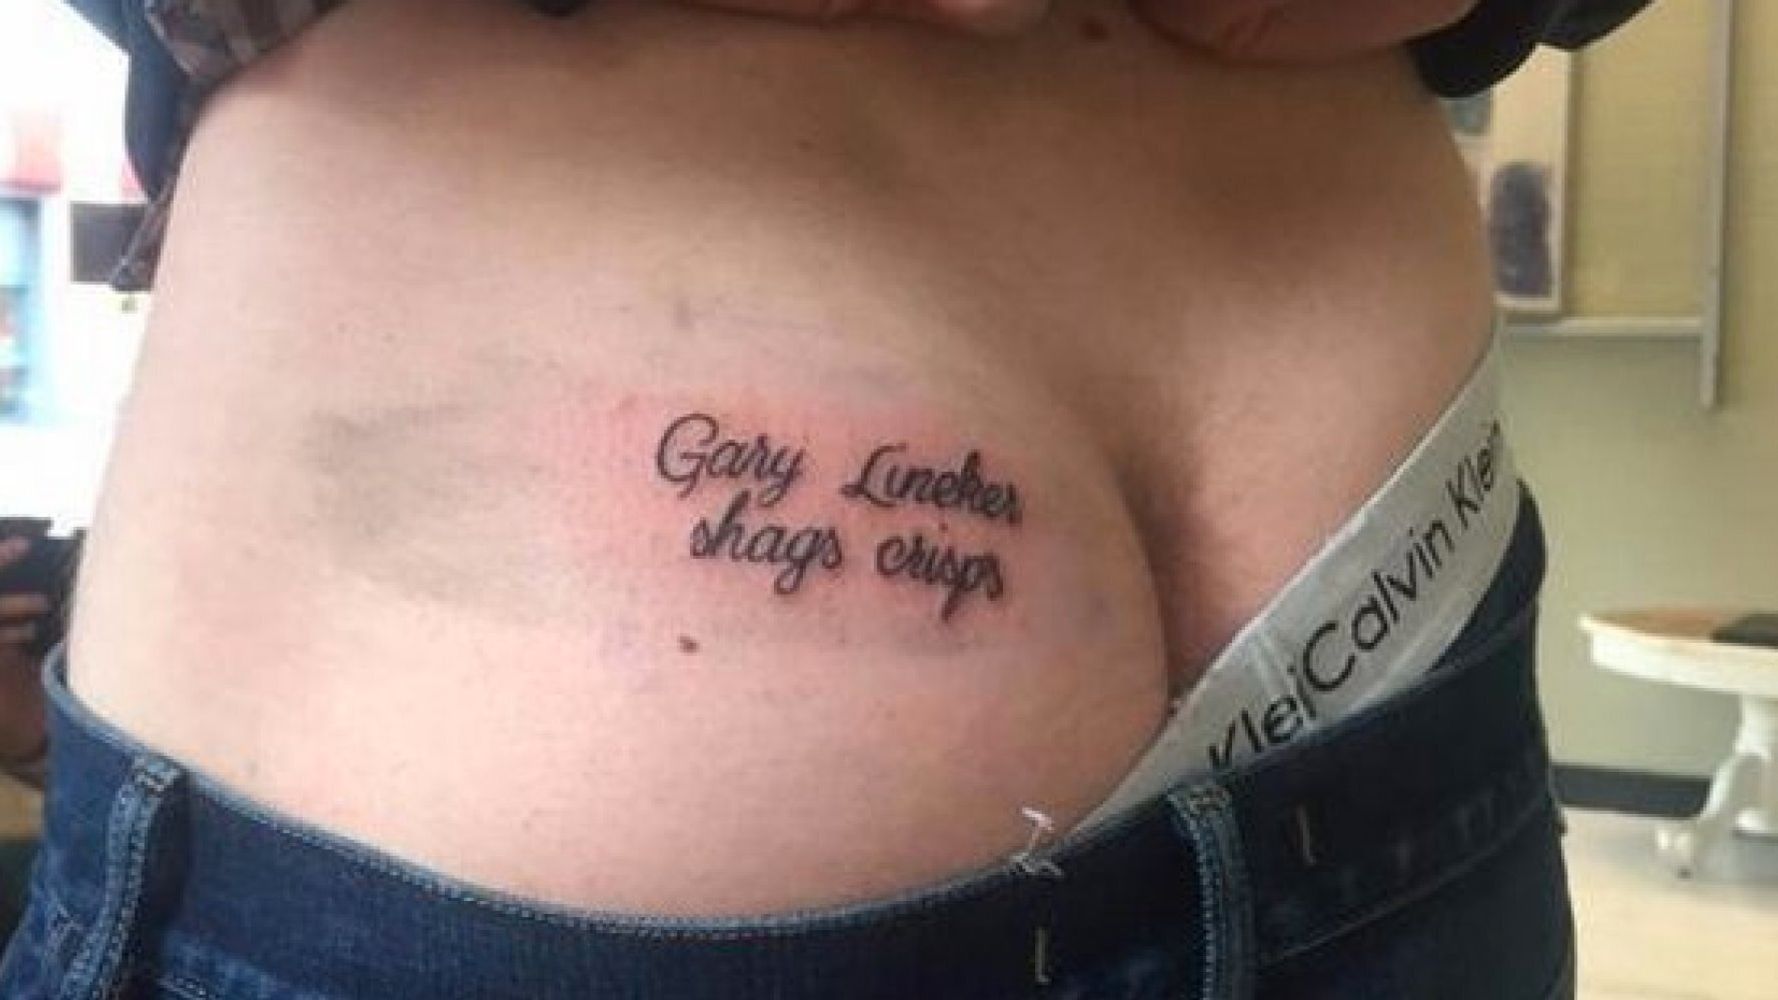 Man Tattoos Gary Lineker Shags Crisps On His Bum Much